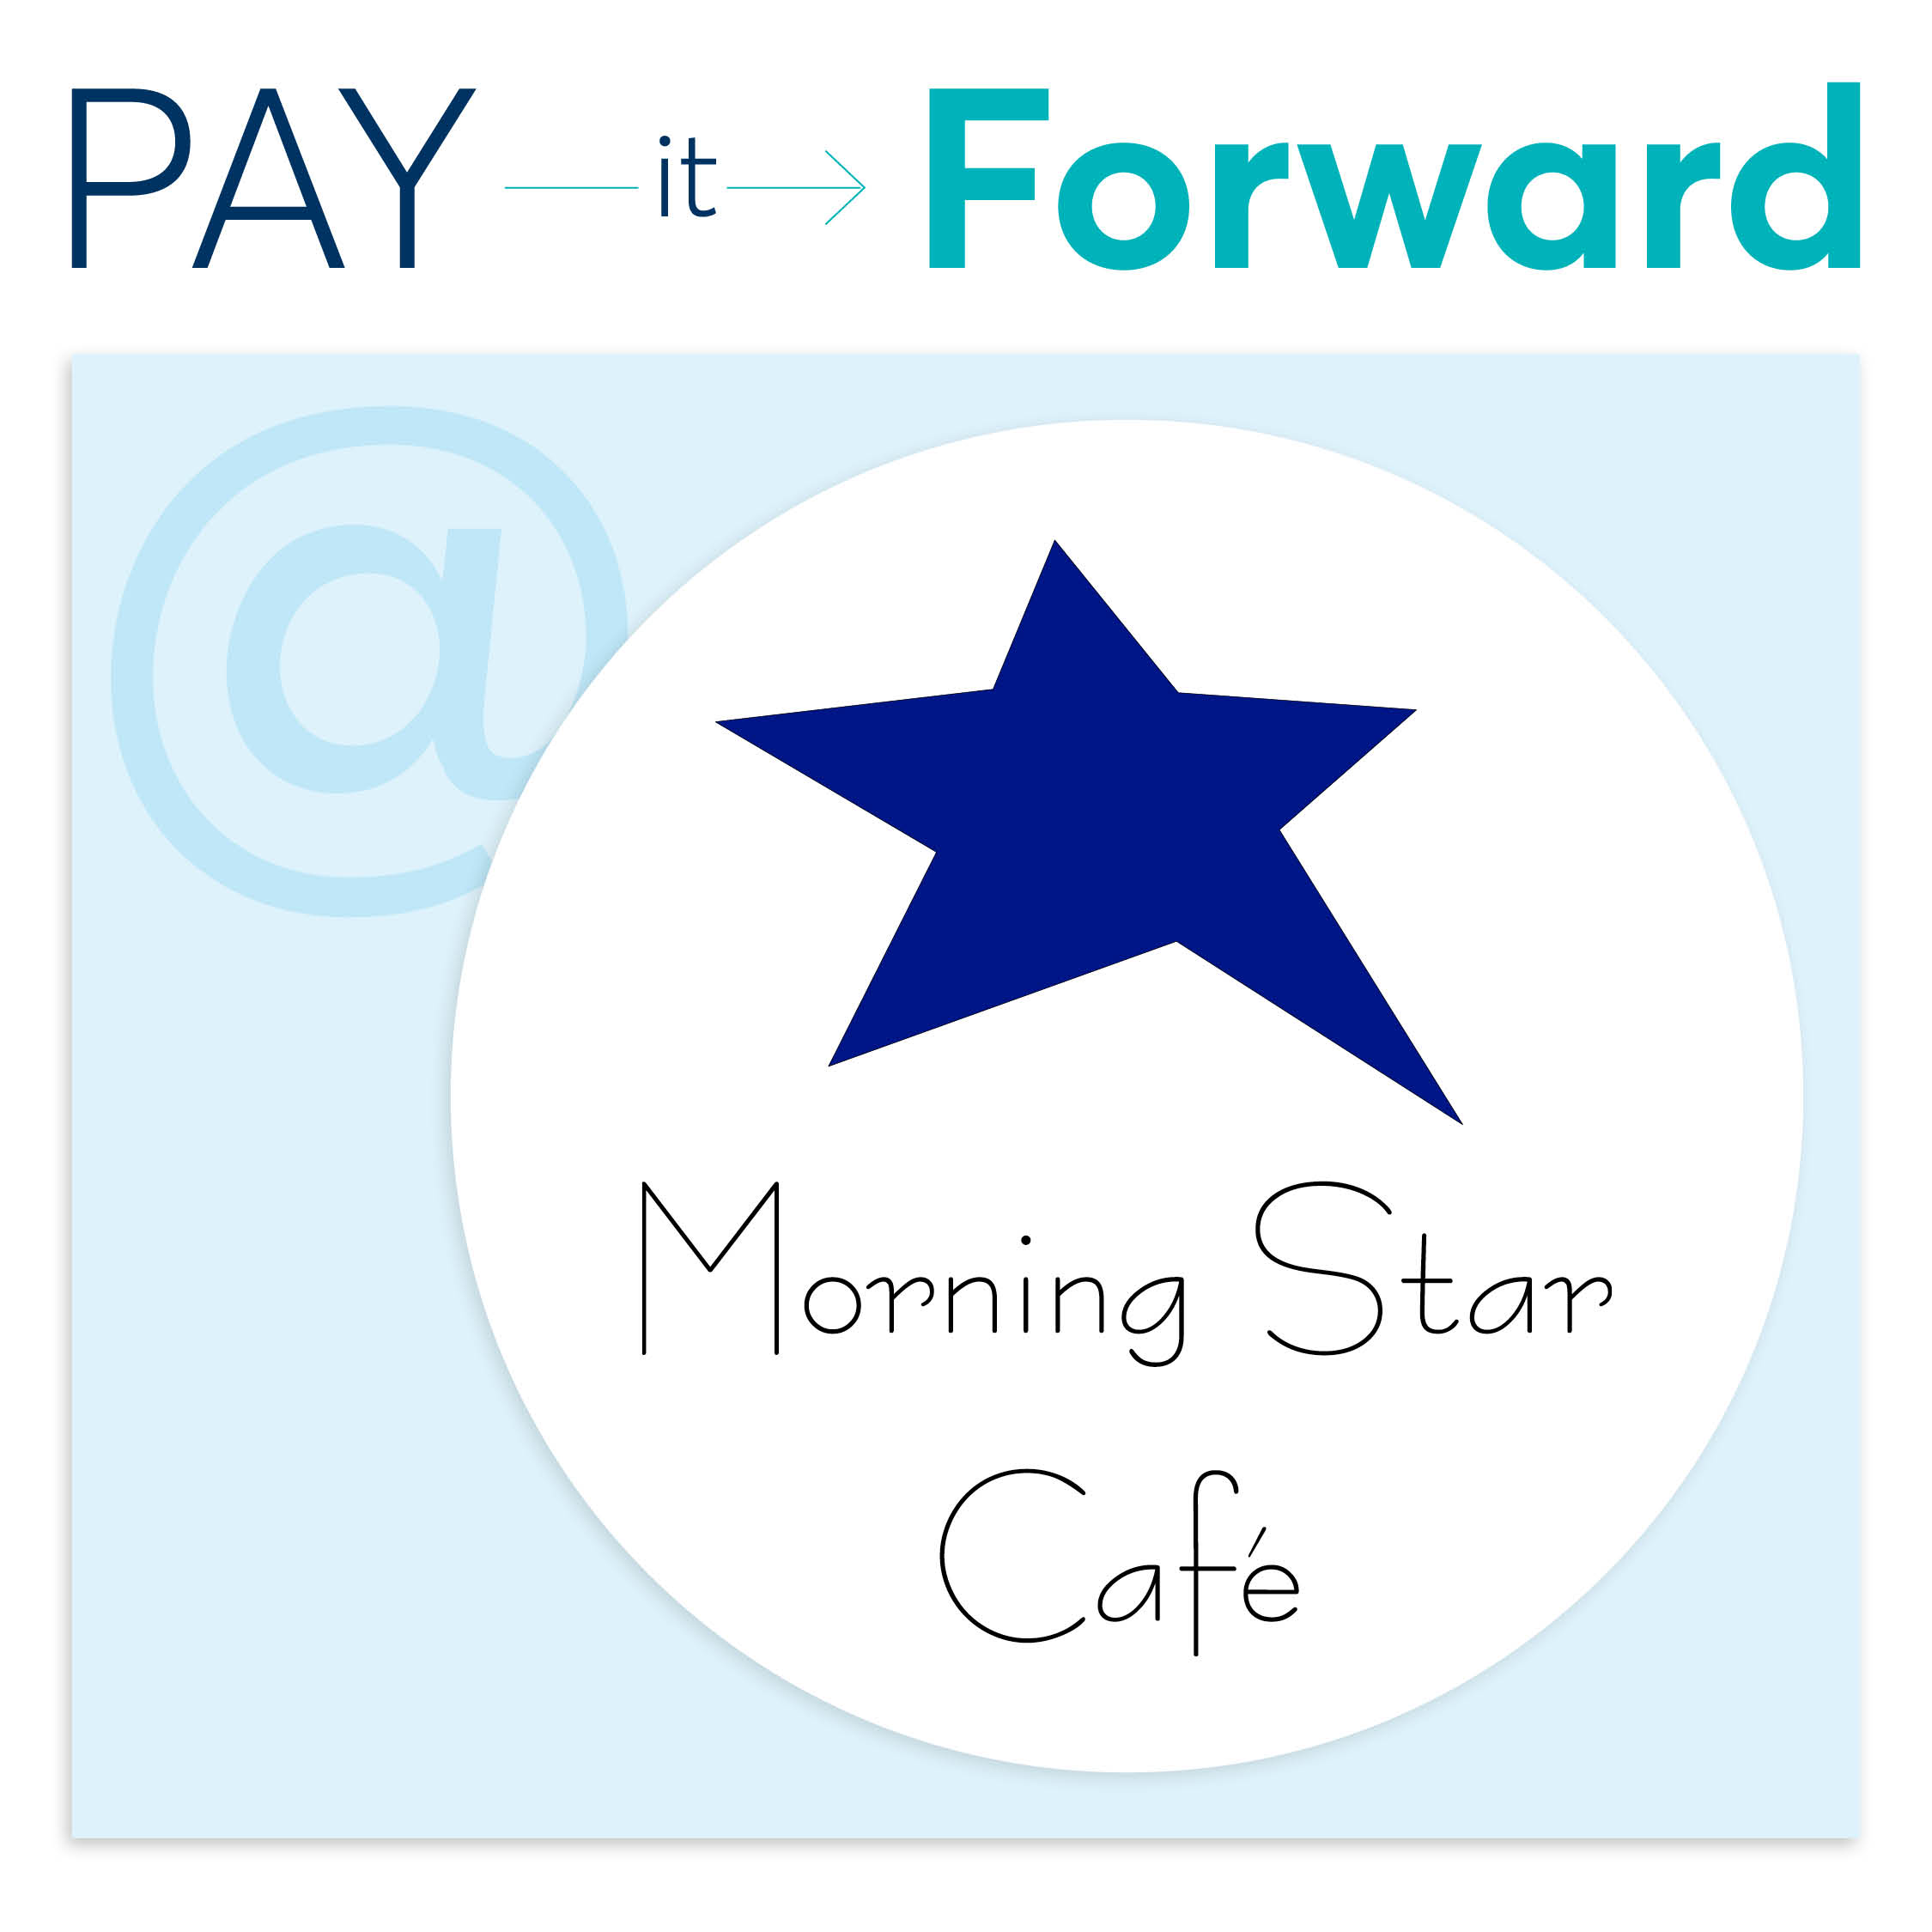 Paying it Forward at Morning Star Cafe